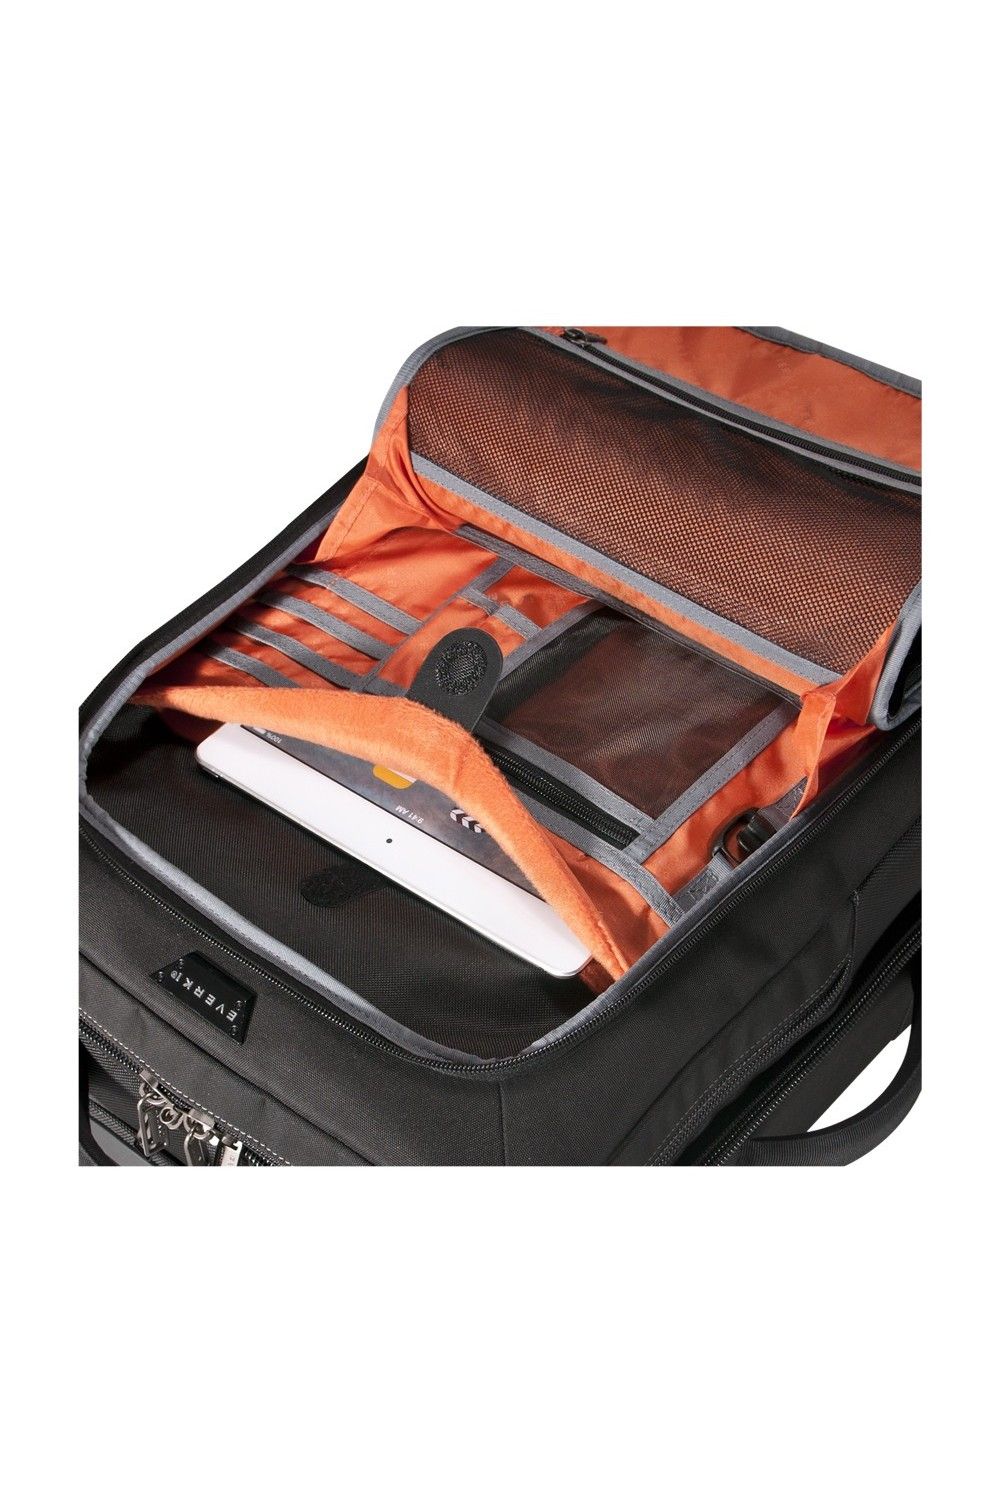 Everki Laptop Trolley Titan pour bagage à main de 15 à 18,4 pouces